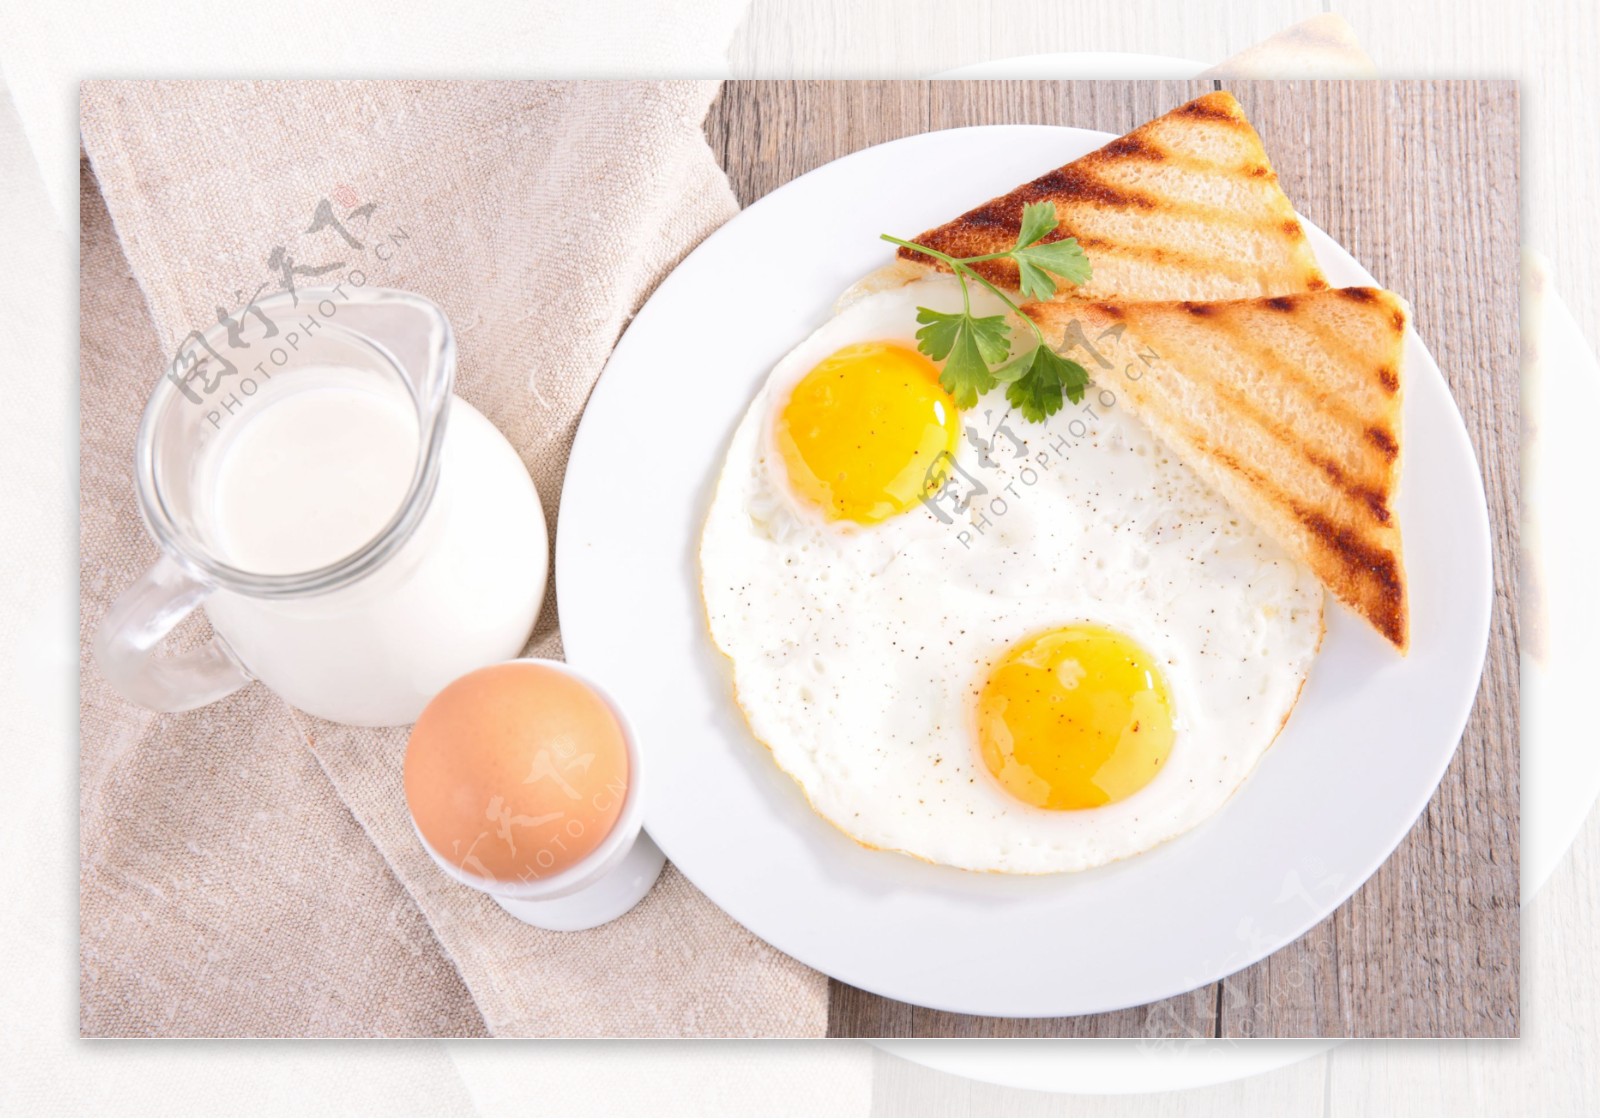 煎蛋和新鲜面包用西红柿、草本和香料早餐 库存图片. 图片 包括有 午餐, 叉子, 饮食, 绿色, 健康 - 116770833